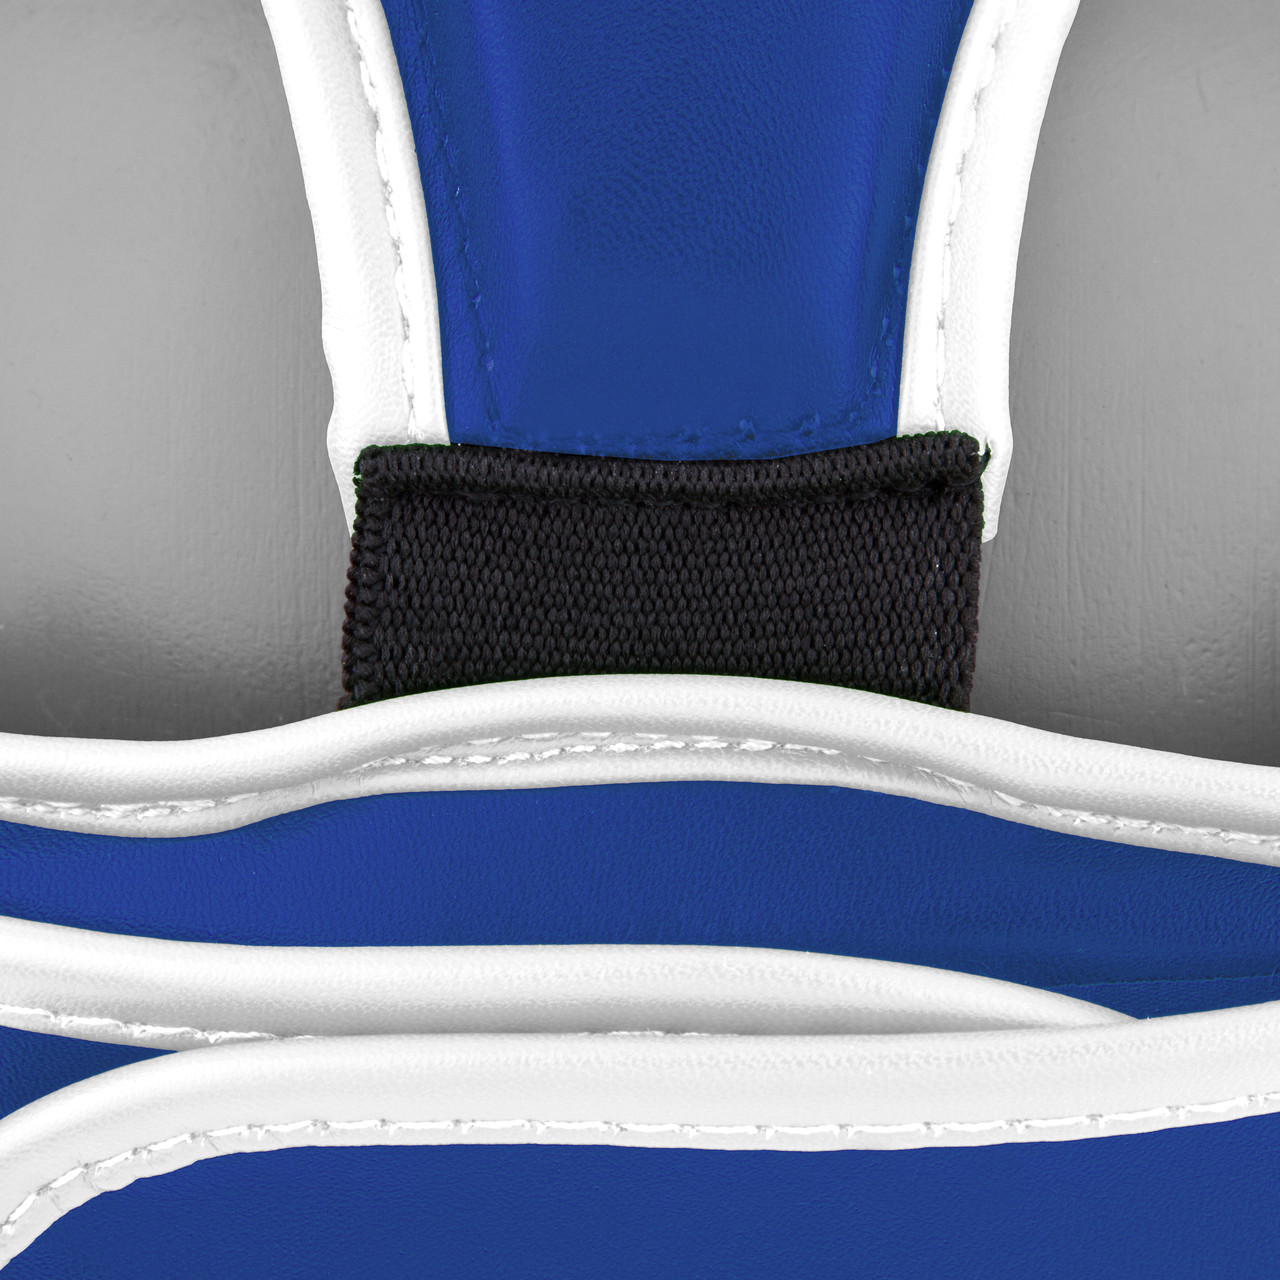 Боксерський шолом тренувальний PowerPlay 3068 PU + Amara Синьо-білий XS